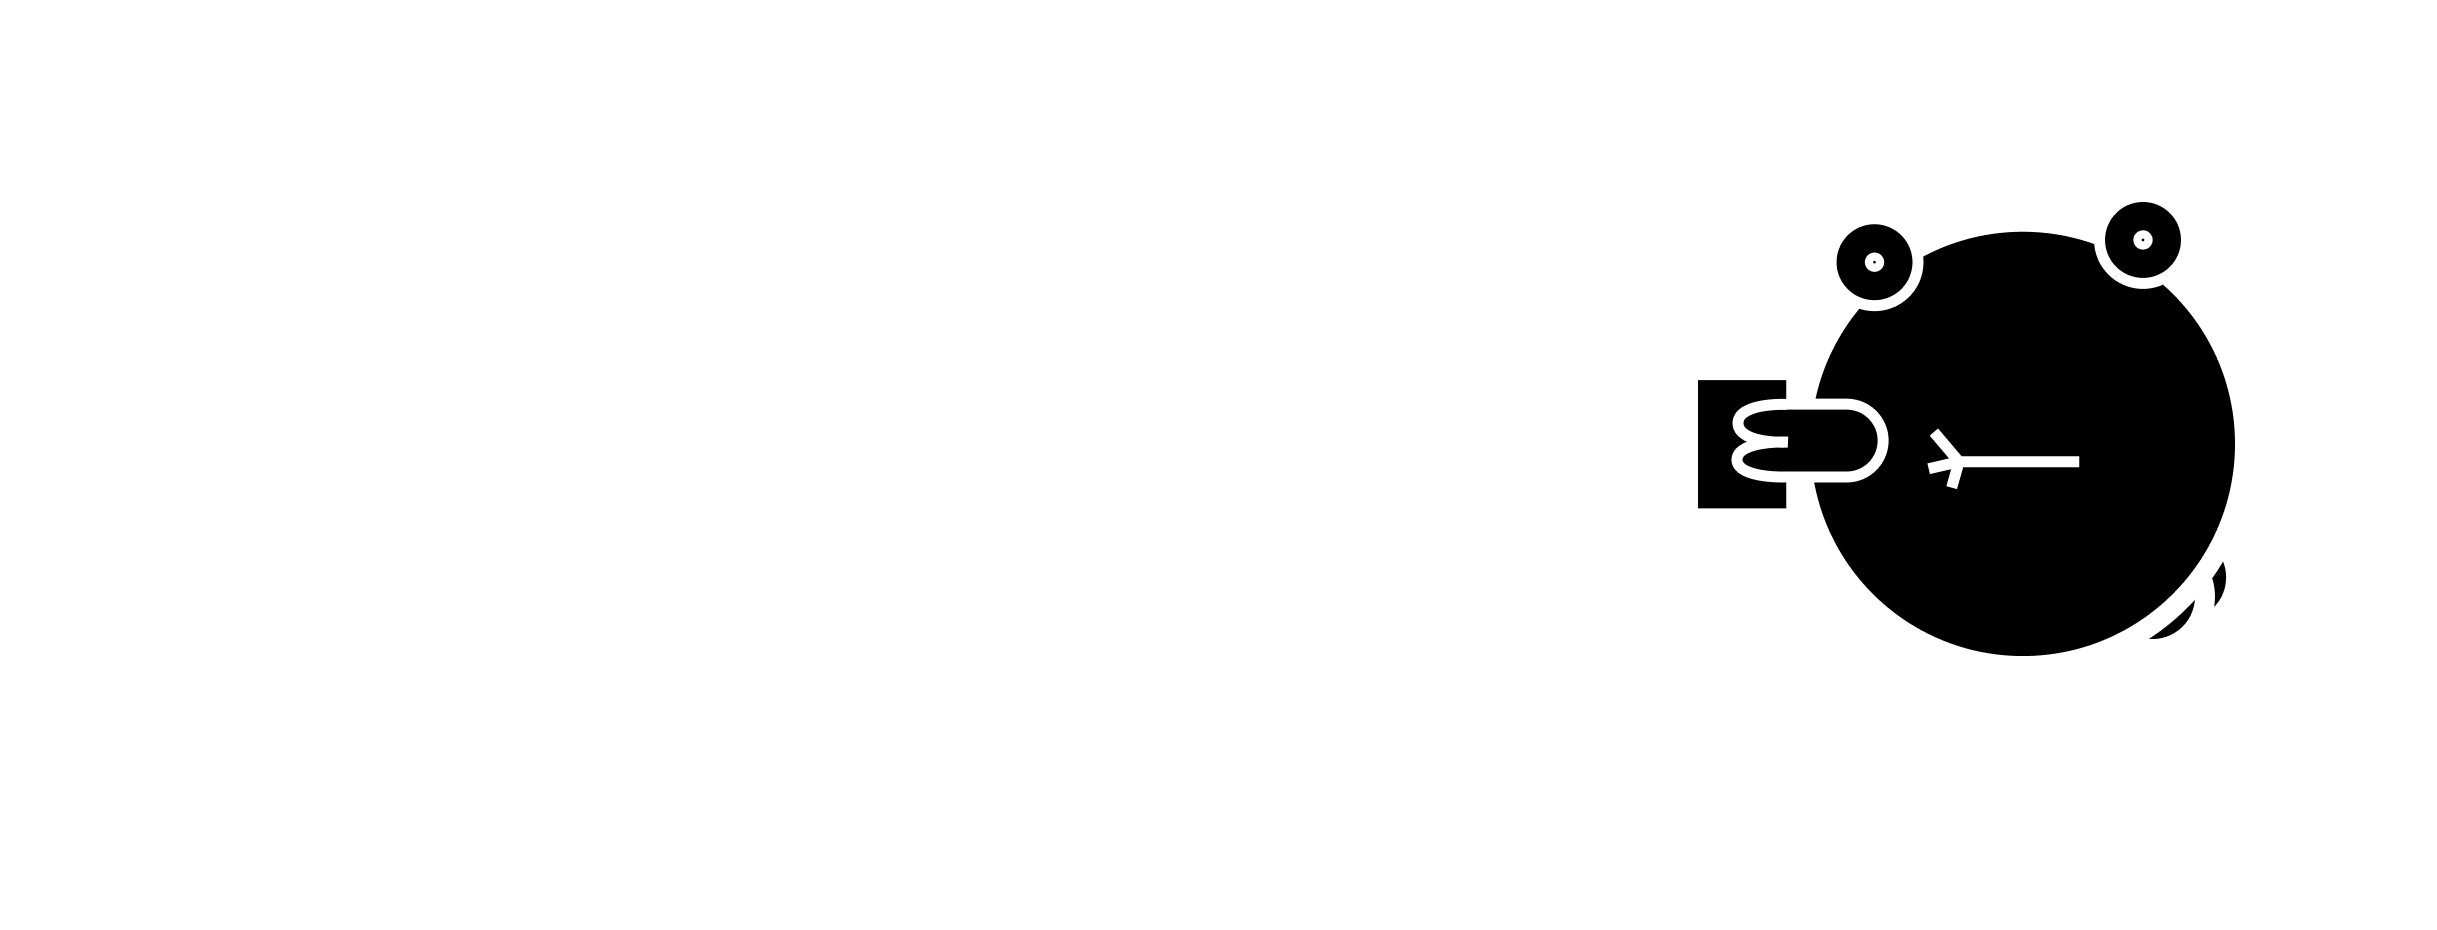 Subway Burger